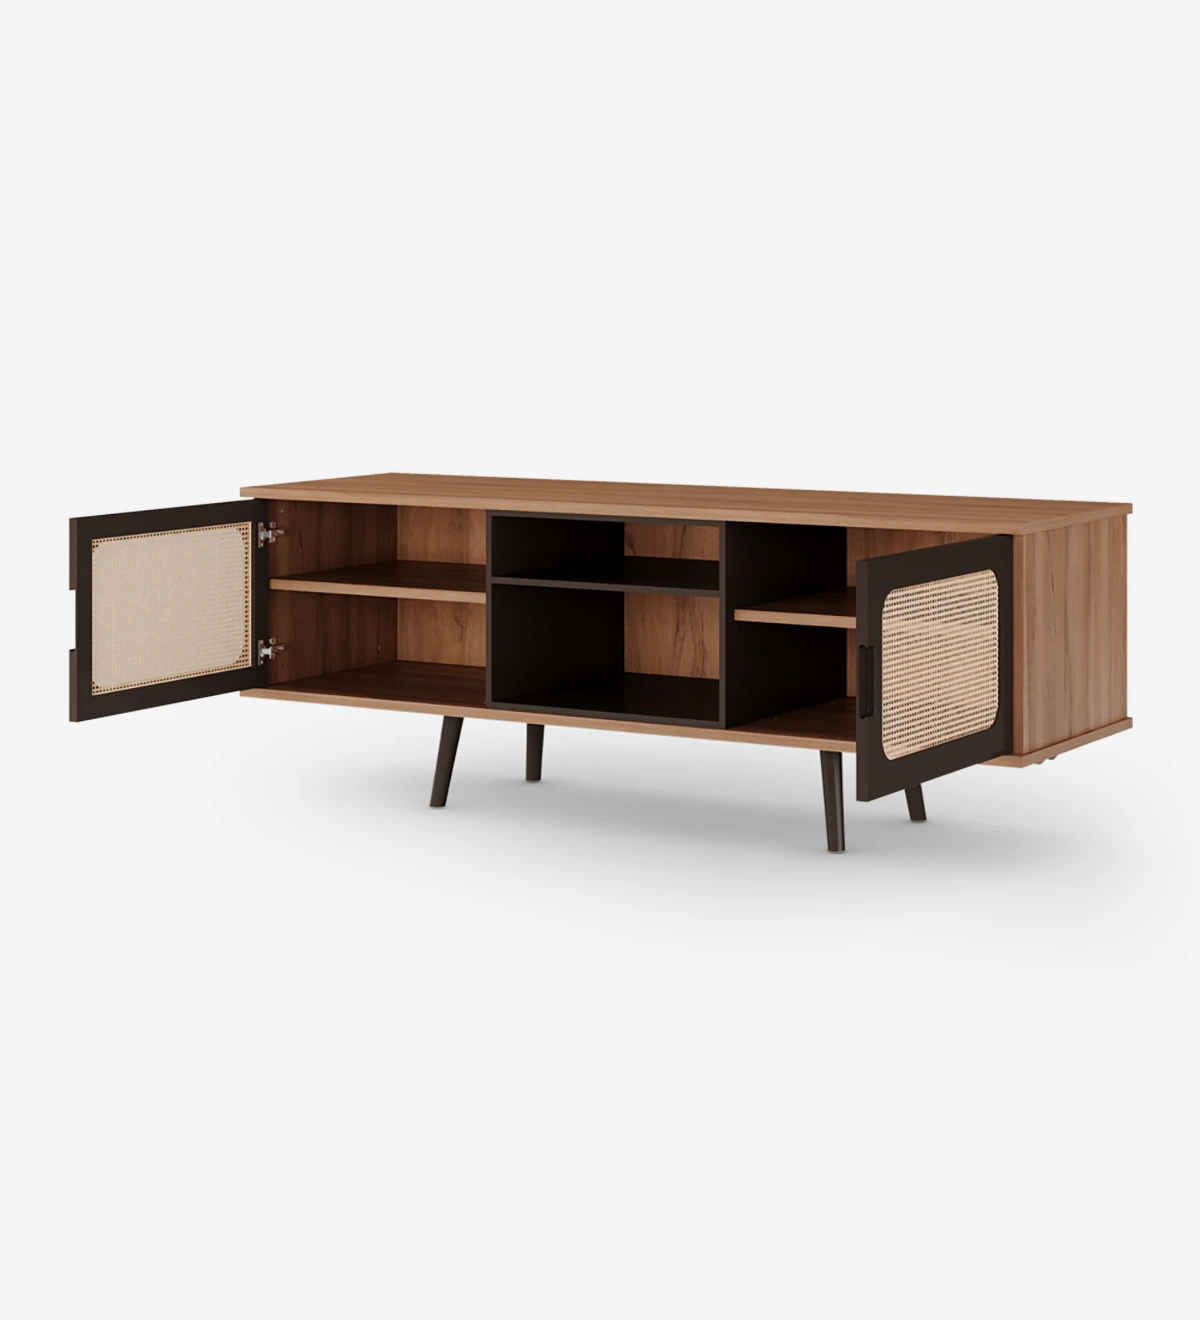 Mueble TV Malmo 2 puertas, detalle ratán, módulo y pies lacados en marrón oscuro, estructura en nogal, 160 x 58,8 cm.